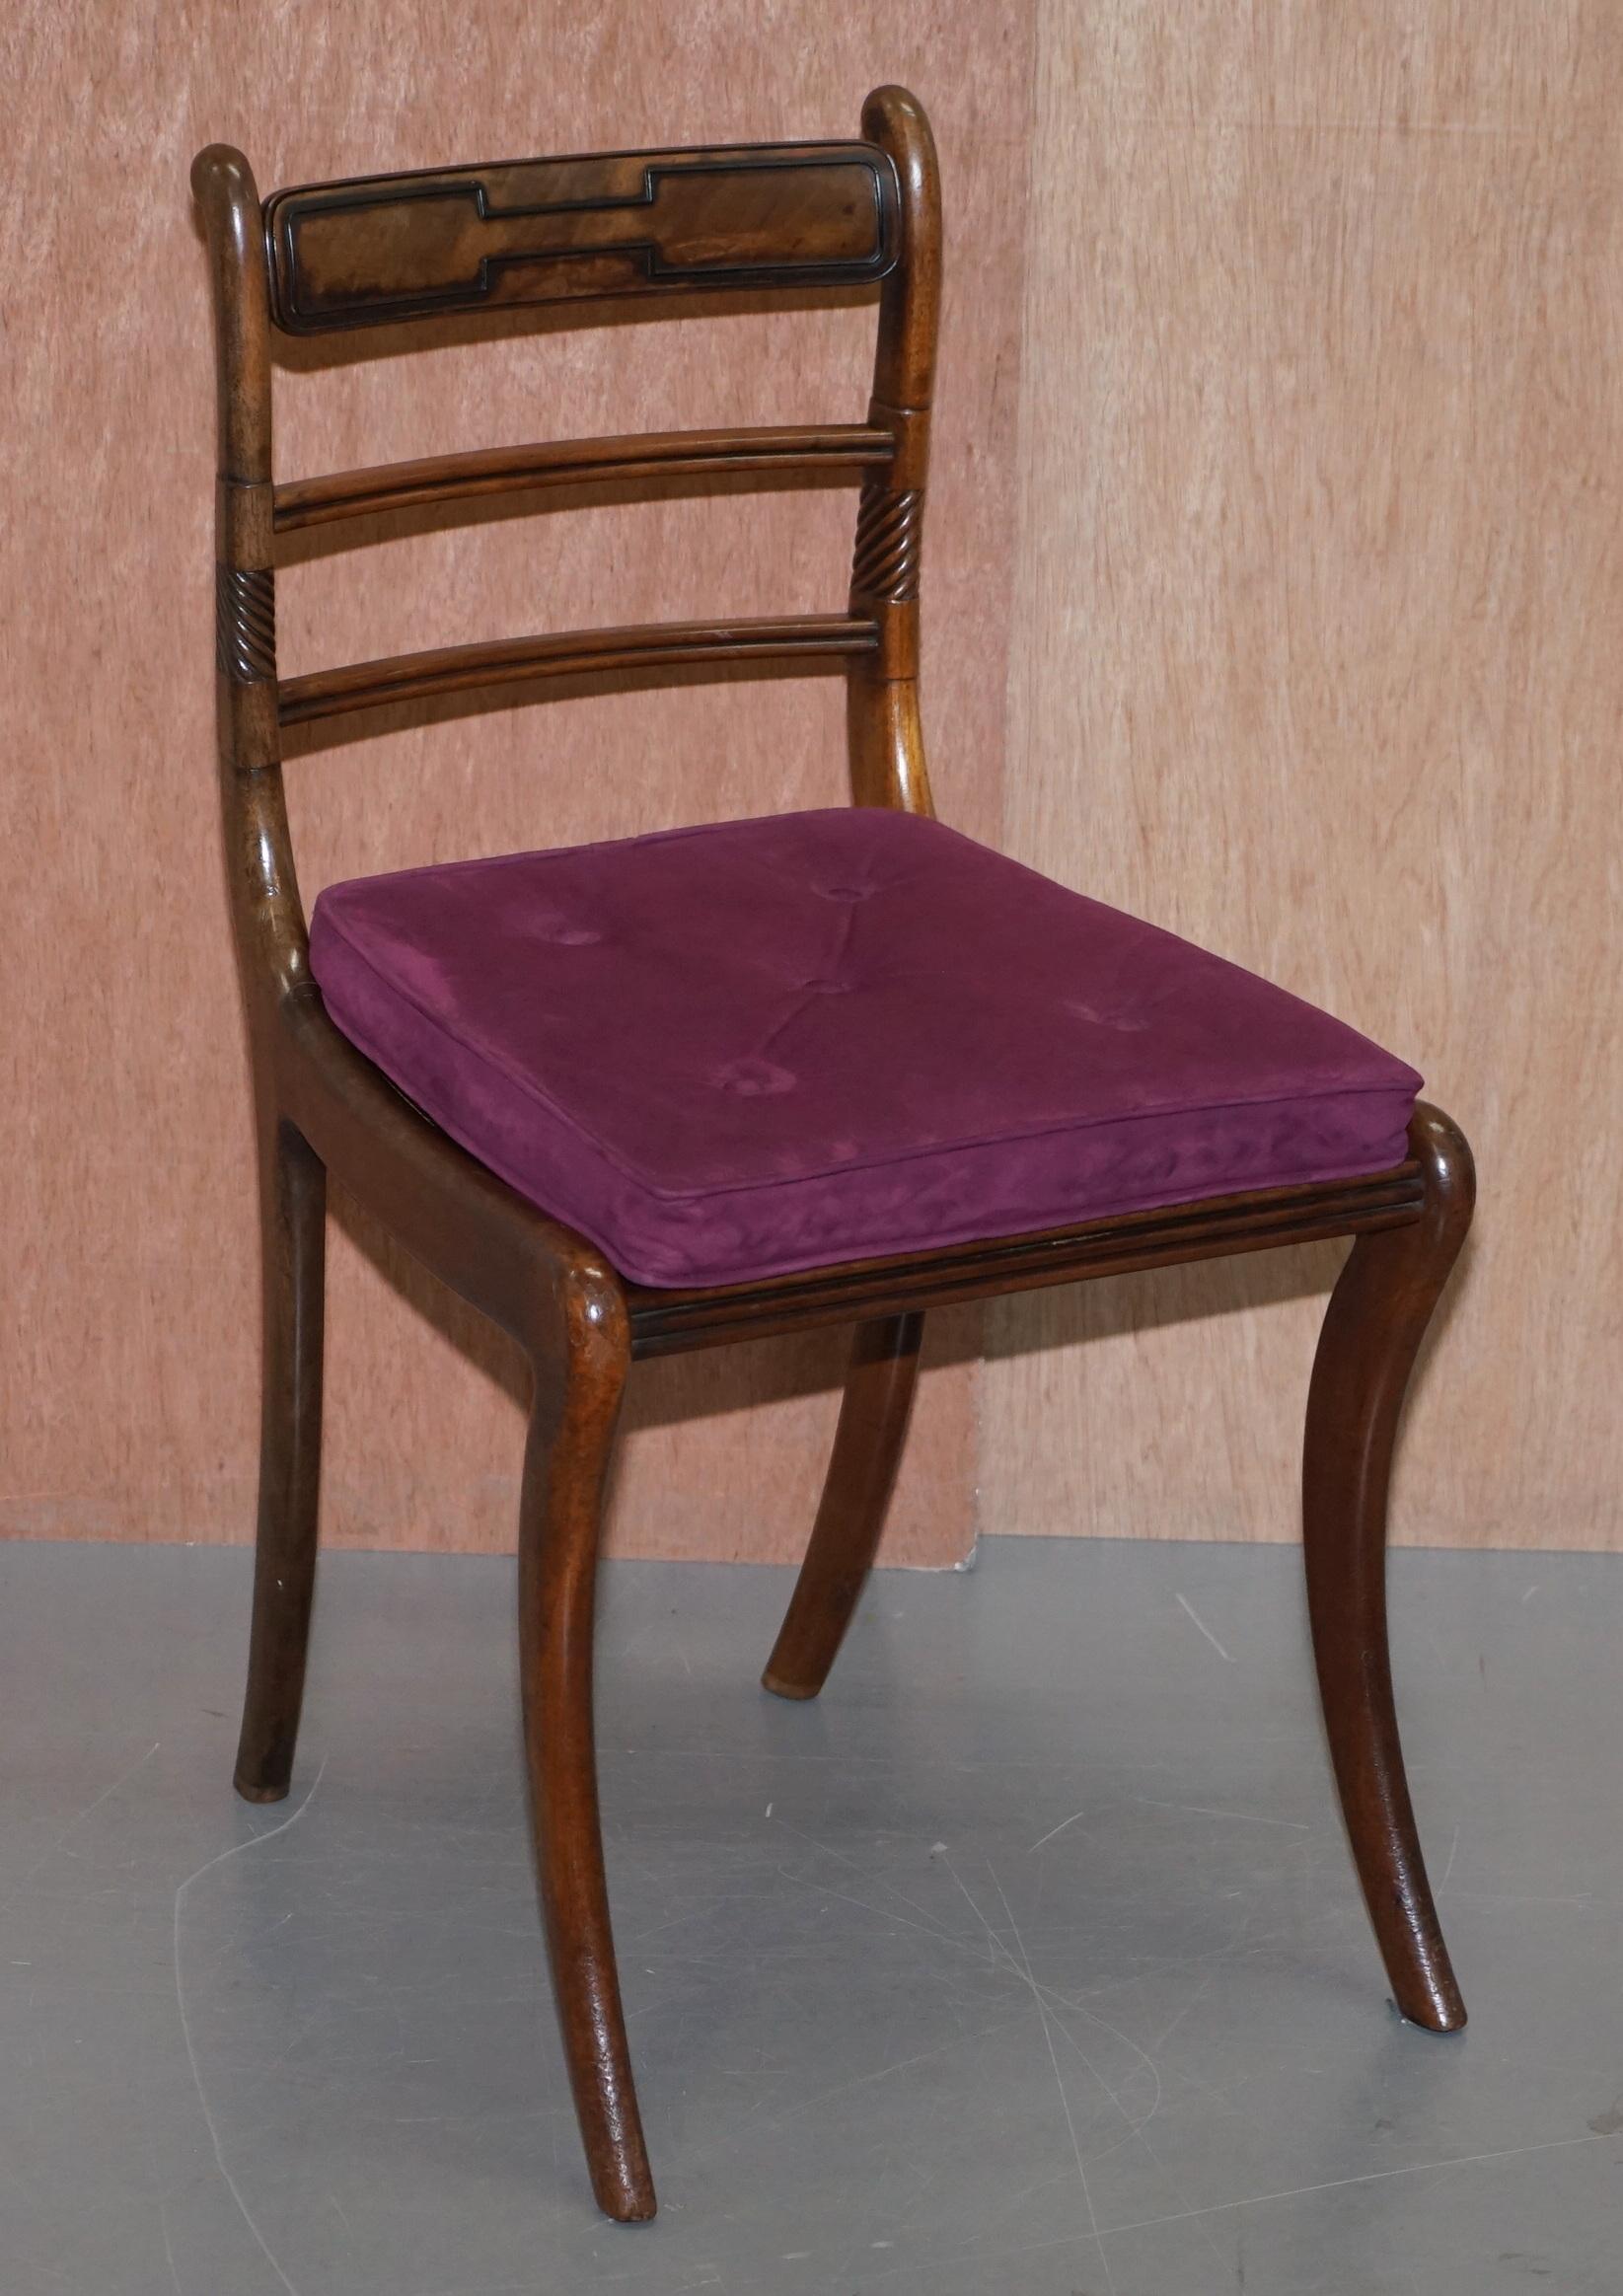 Nous sommes ravis d'offrir à la vente cette sublime suite de six chaises de salle à manger d'origine Régence vers 1810-1820 à pieds sabre. 

Il s'agit d'un ensemble de très bonne facture, dont les cadres sont ornés de sculptures et de sièges en